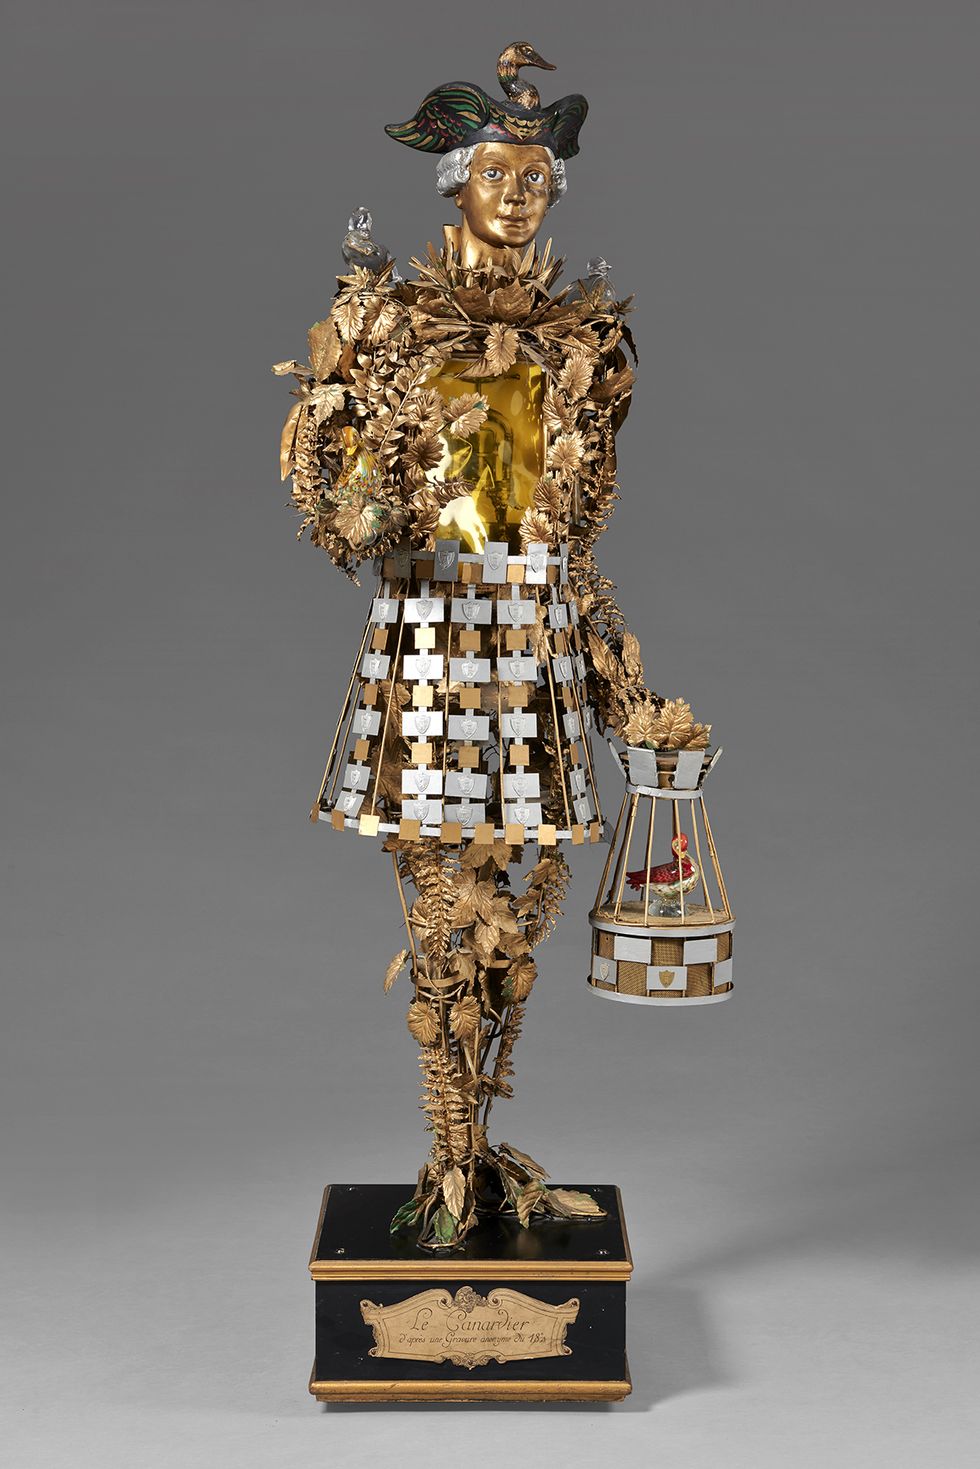 Sculpture, Trophy, Award, Brass, Metal, Bronze, Symbol, Statue, Artifact, Gold, 